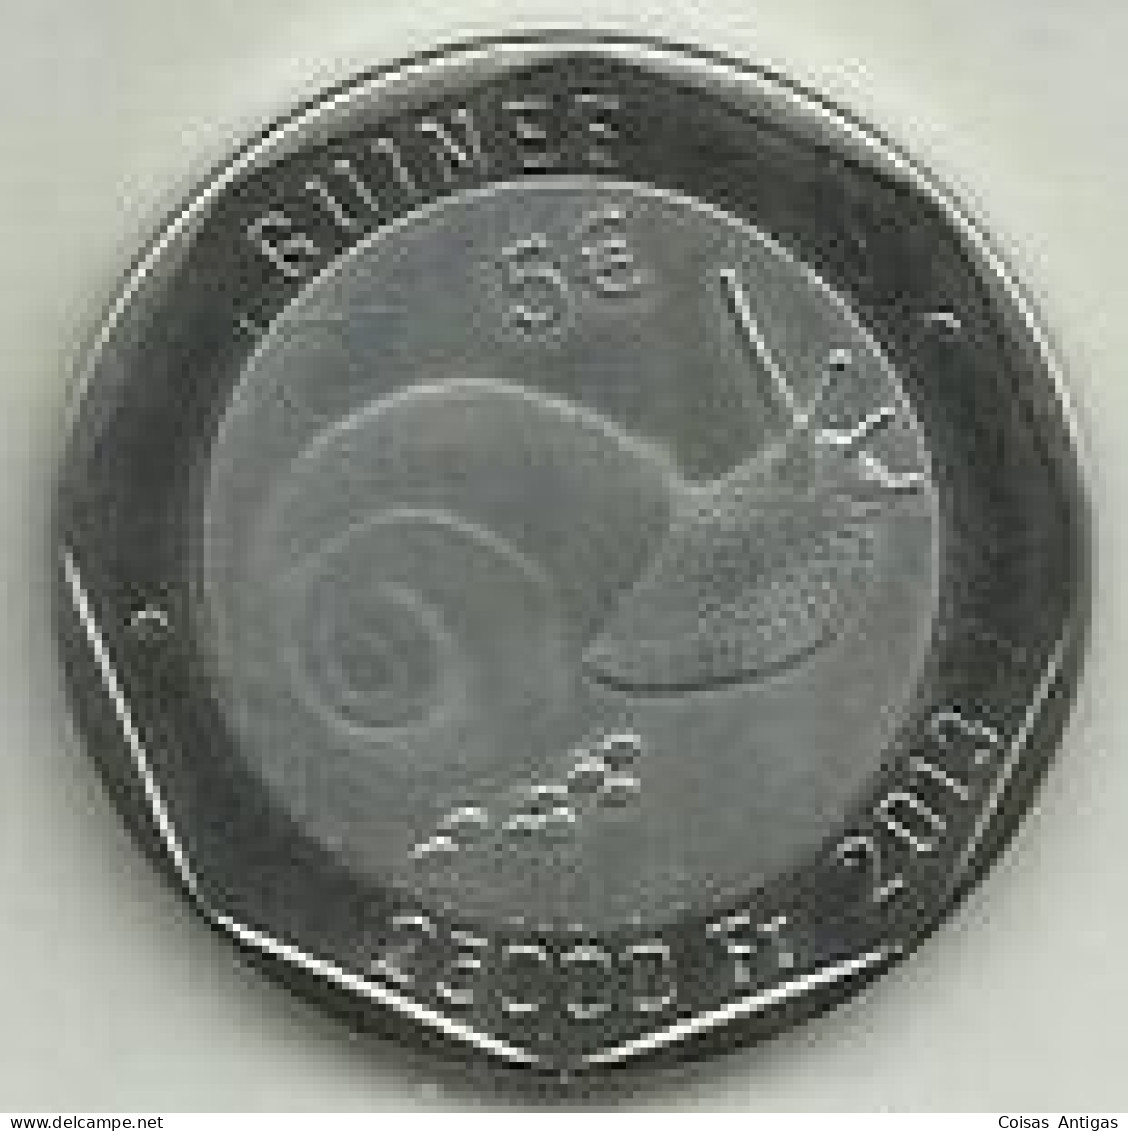 S-25.000 Francs 2013 Guinee - Guinea